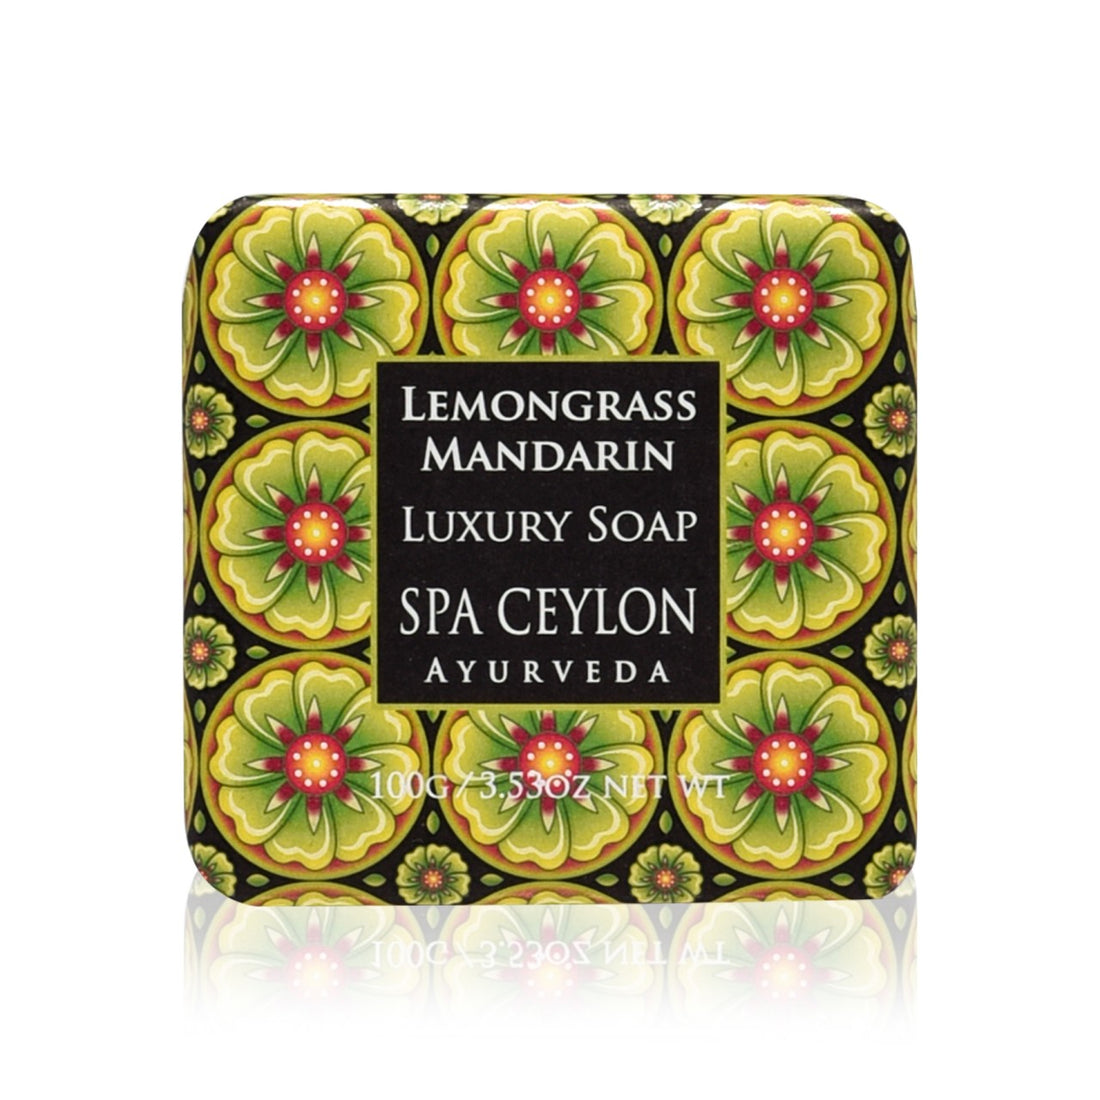 Lemongrass Mandarin Luxury Soap